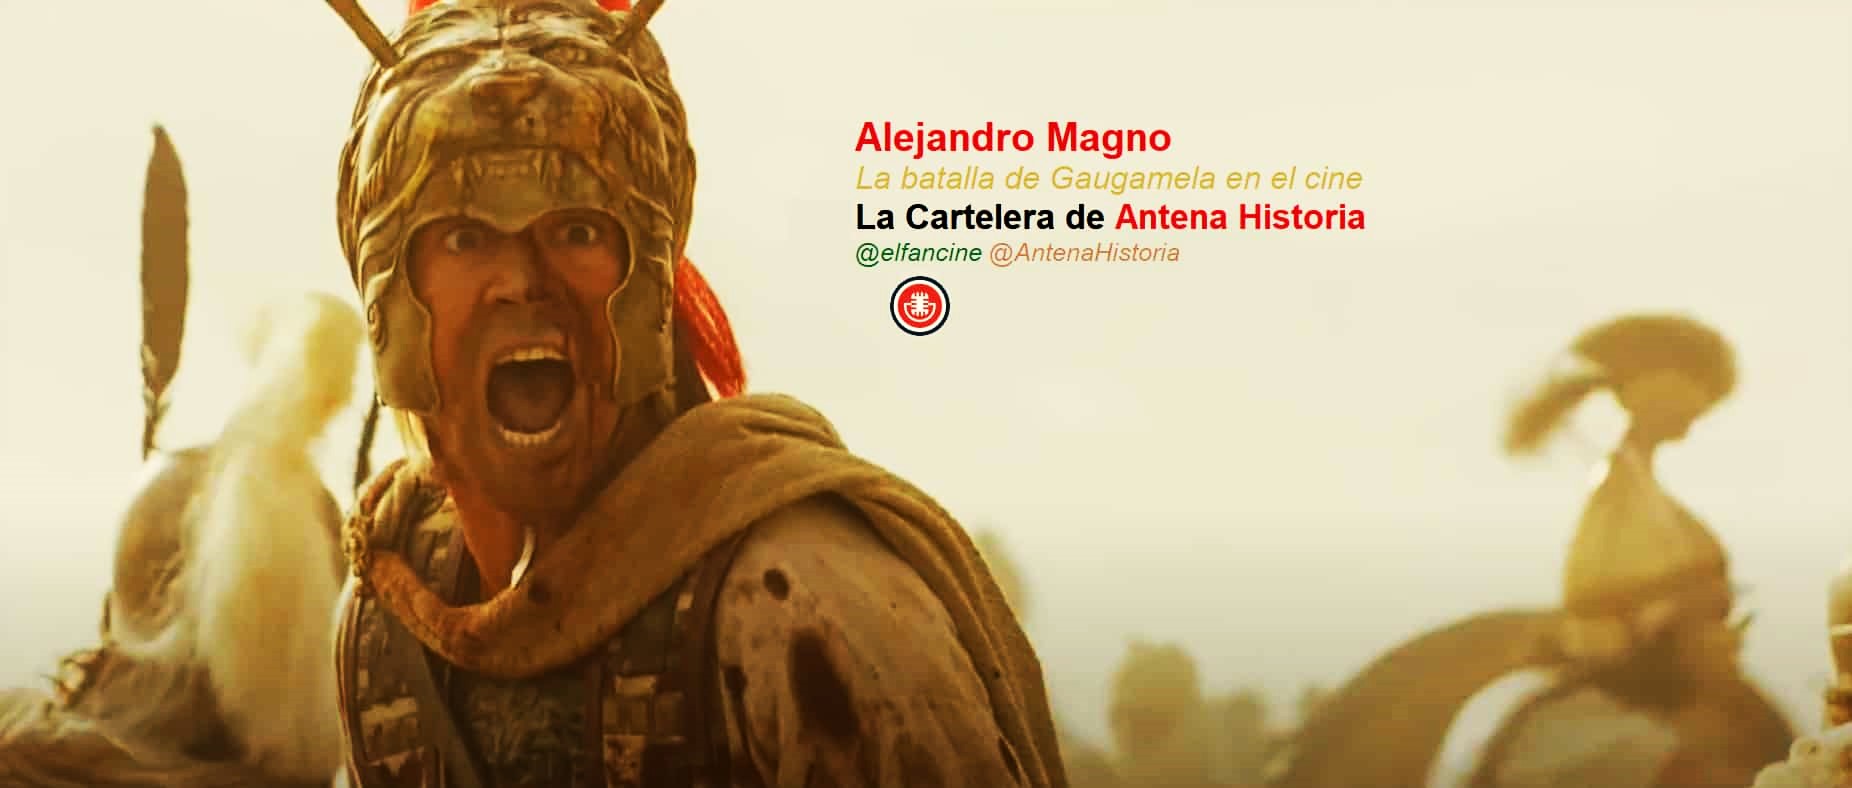 La batalla de Gaugamela en el cine - Alejandro Magno - Podcast de cine - Antena Historia - el fancine - Alvaro Garcia - AlvaroGP - Web de cine